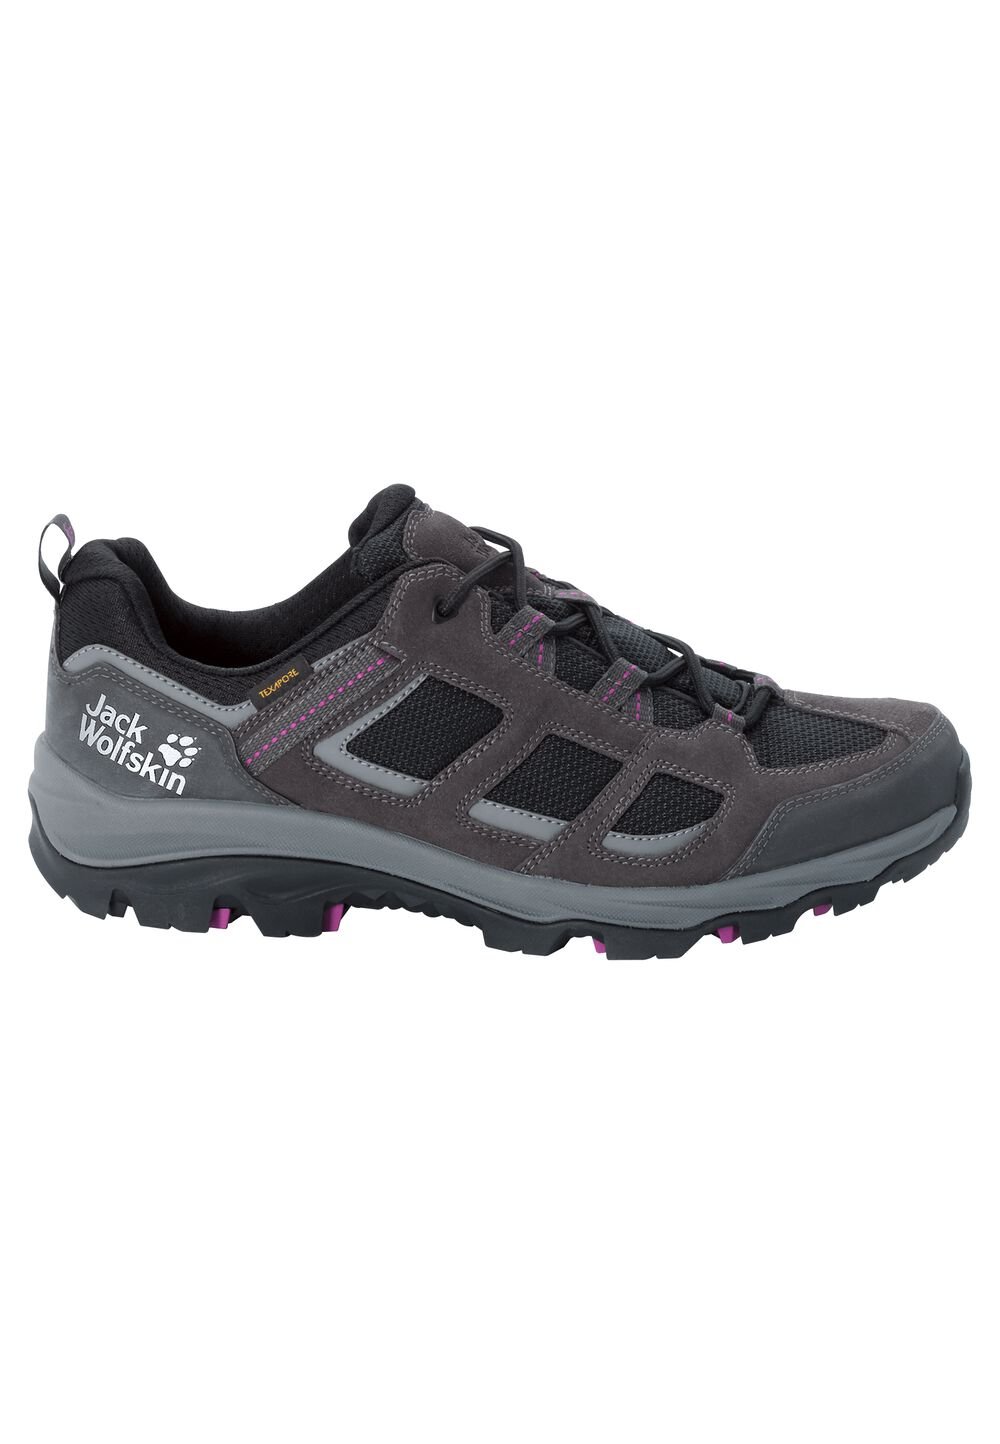 Chaussures de randonnée imperméables femmes Vojo 3 Texapore Low Women 6 gris dark steel / purple